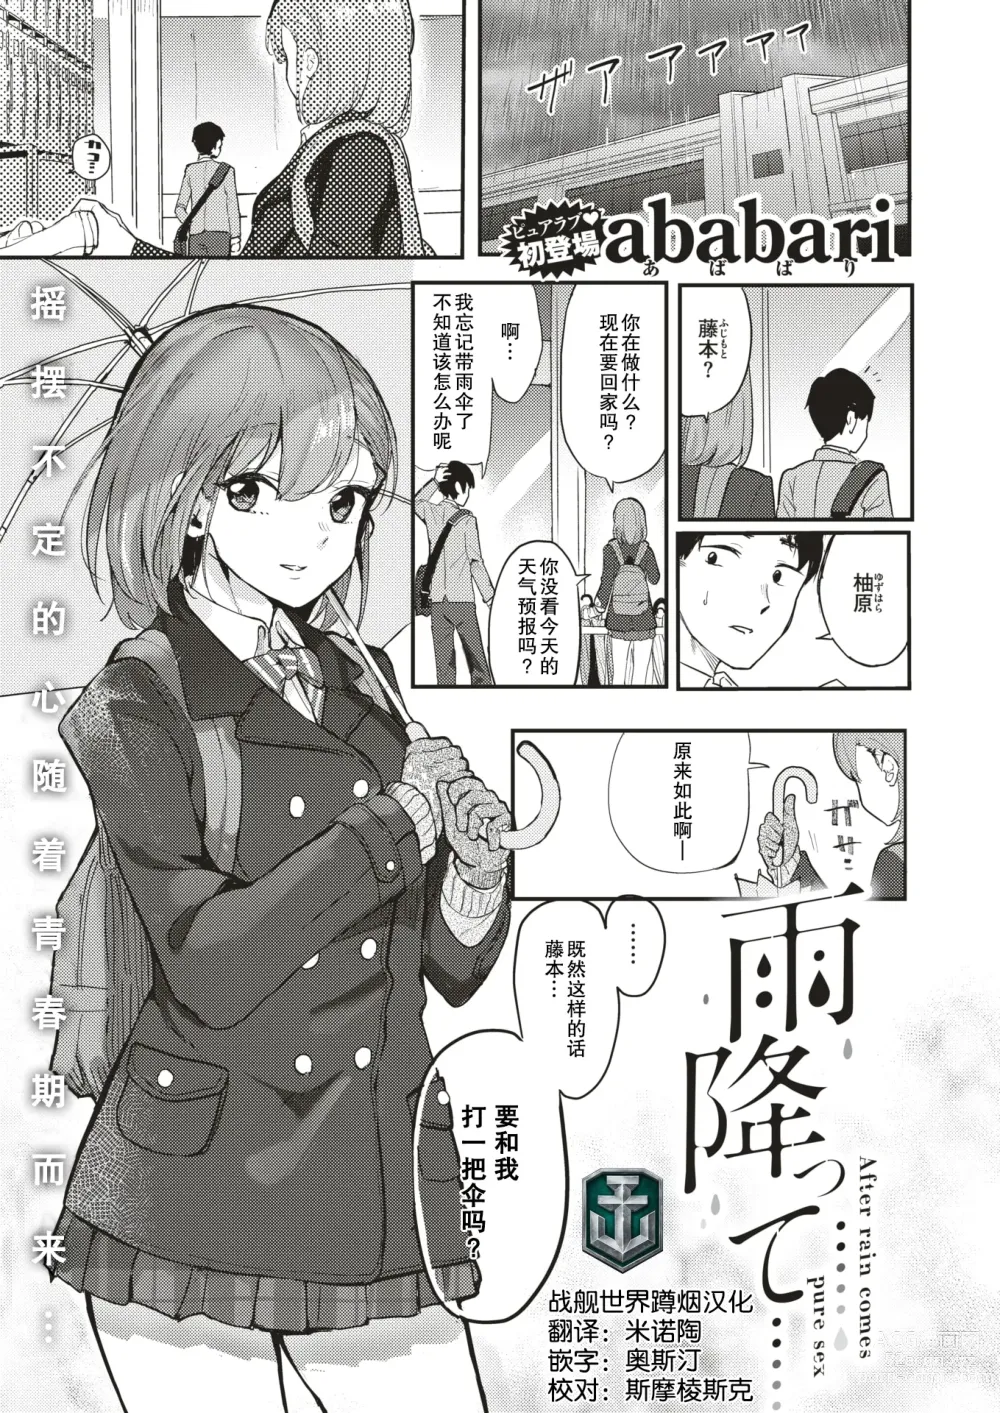 Page 1 of manga 下雨了